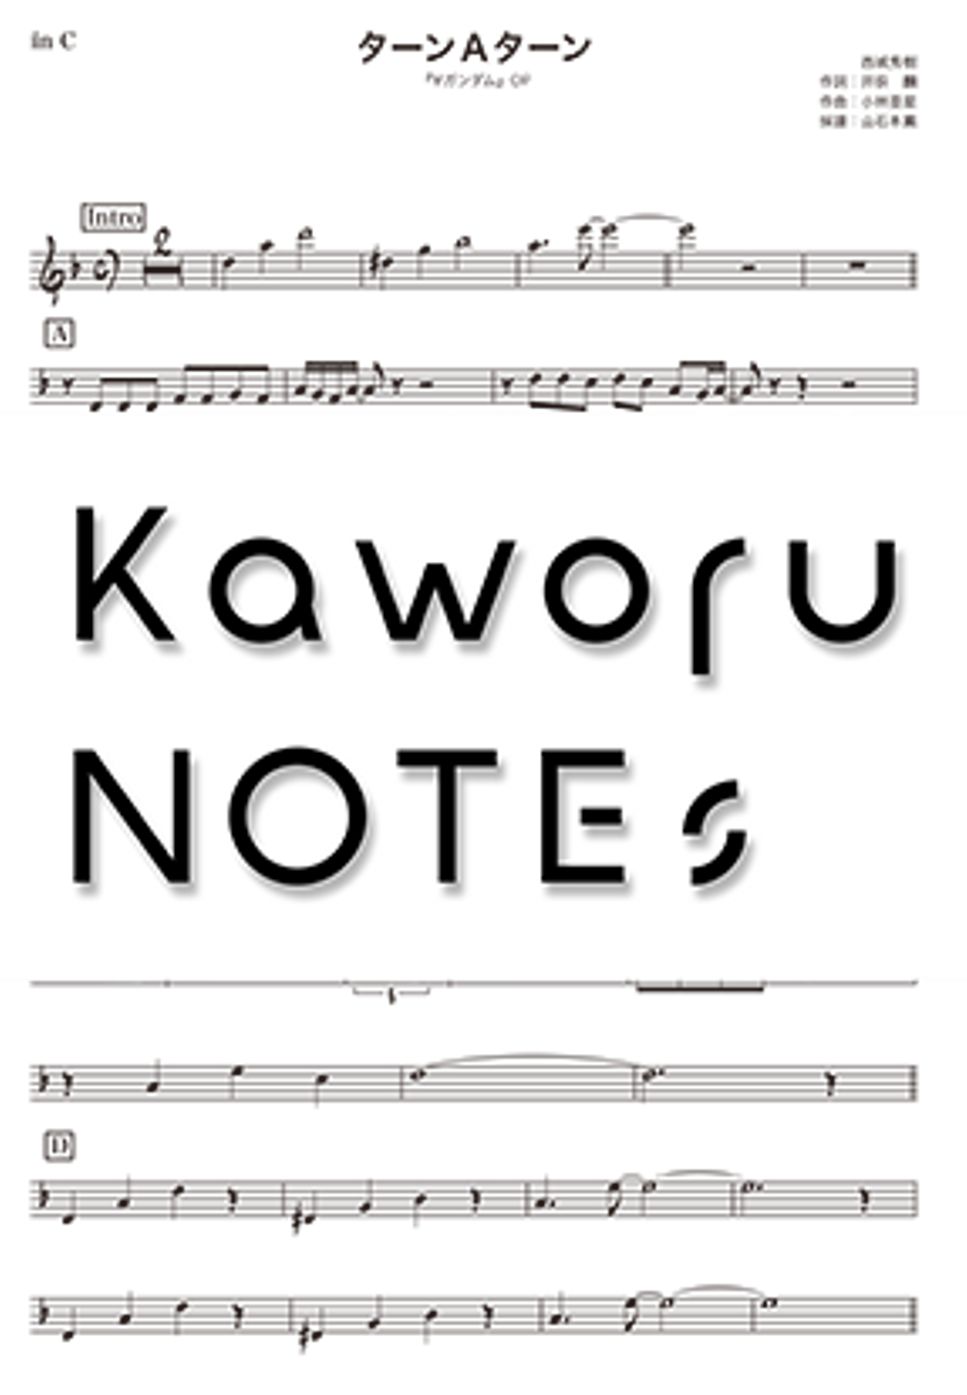 西城秀樹 - ターンＡターン（in B♭『∀ガンダム』） by Kaworu NOTEs